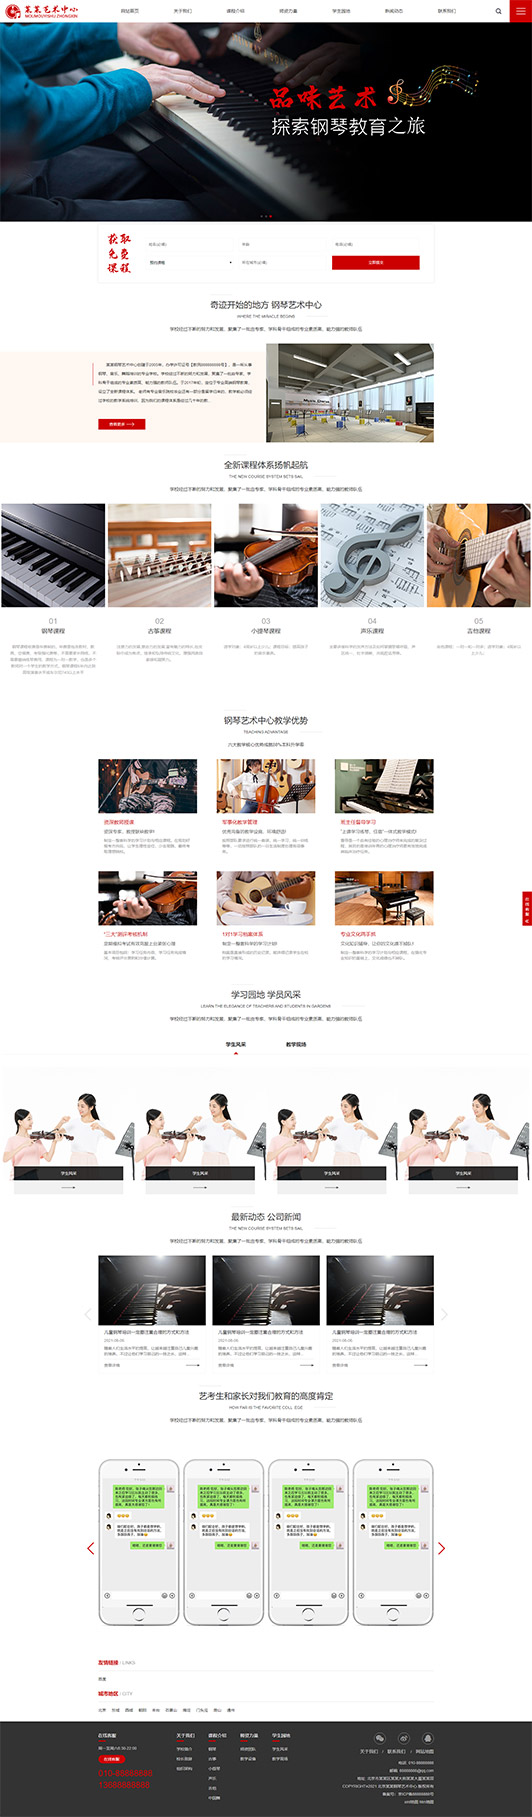 塔城钢琴艺术培训公司响应式企业网站